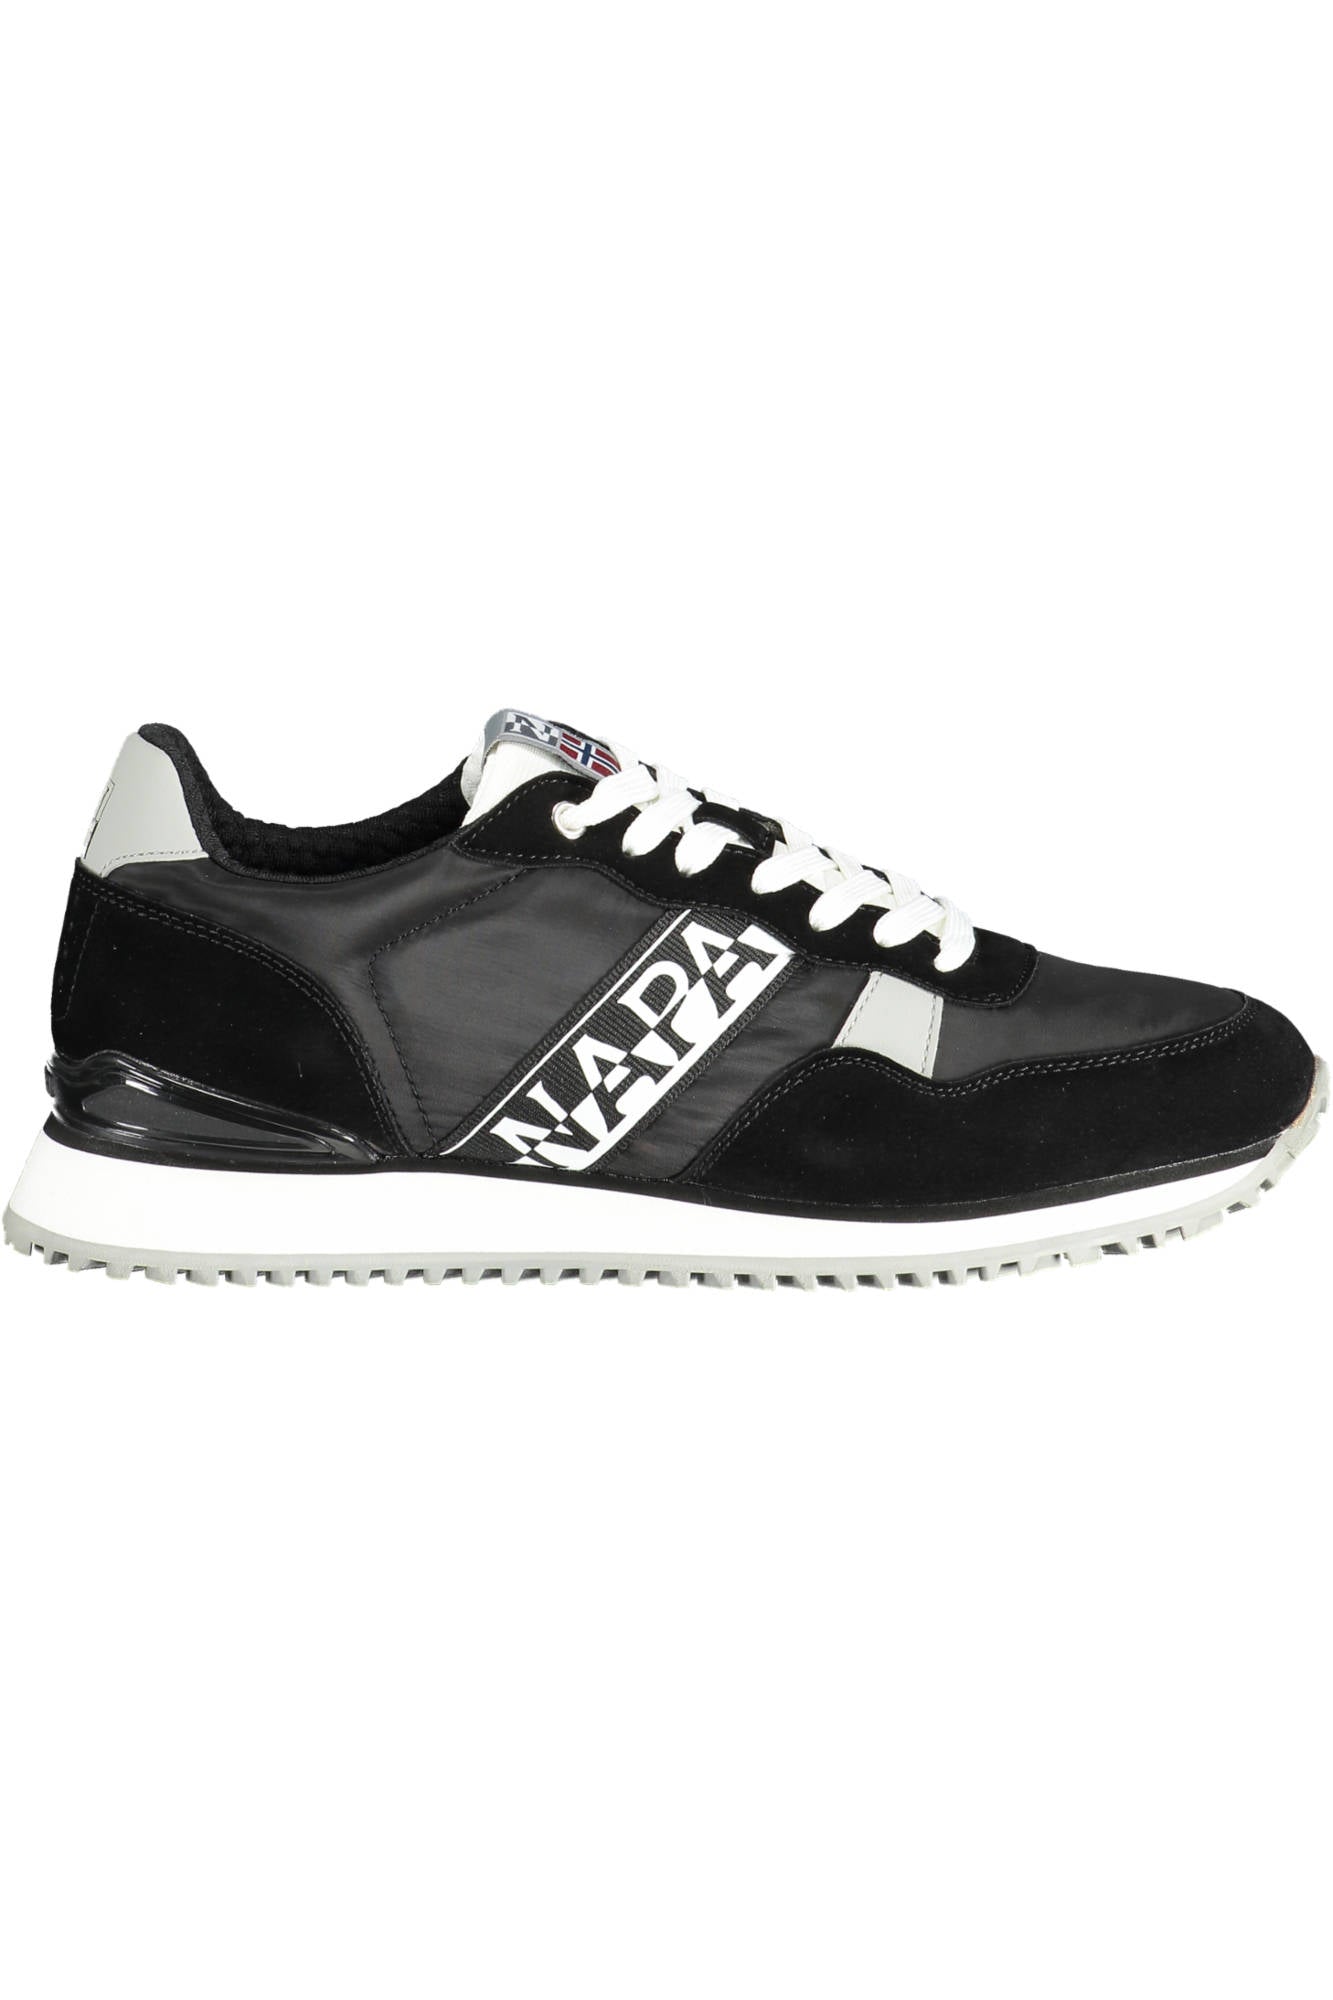 Napapijri Black Sneakers - Fizigo